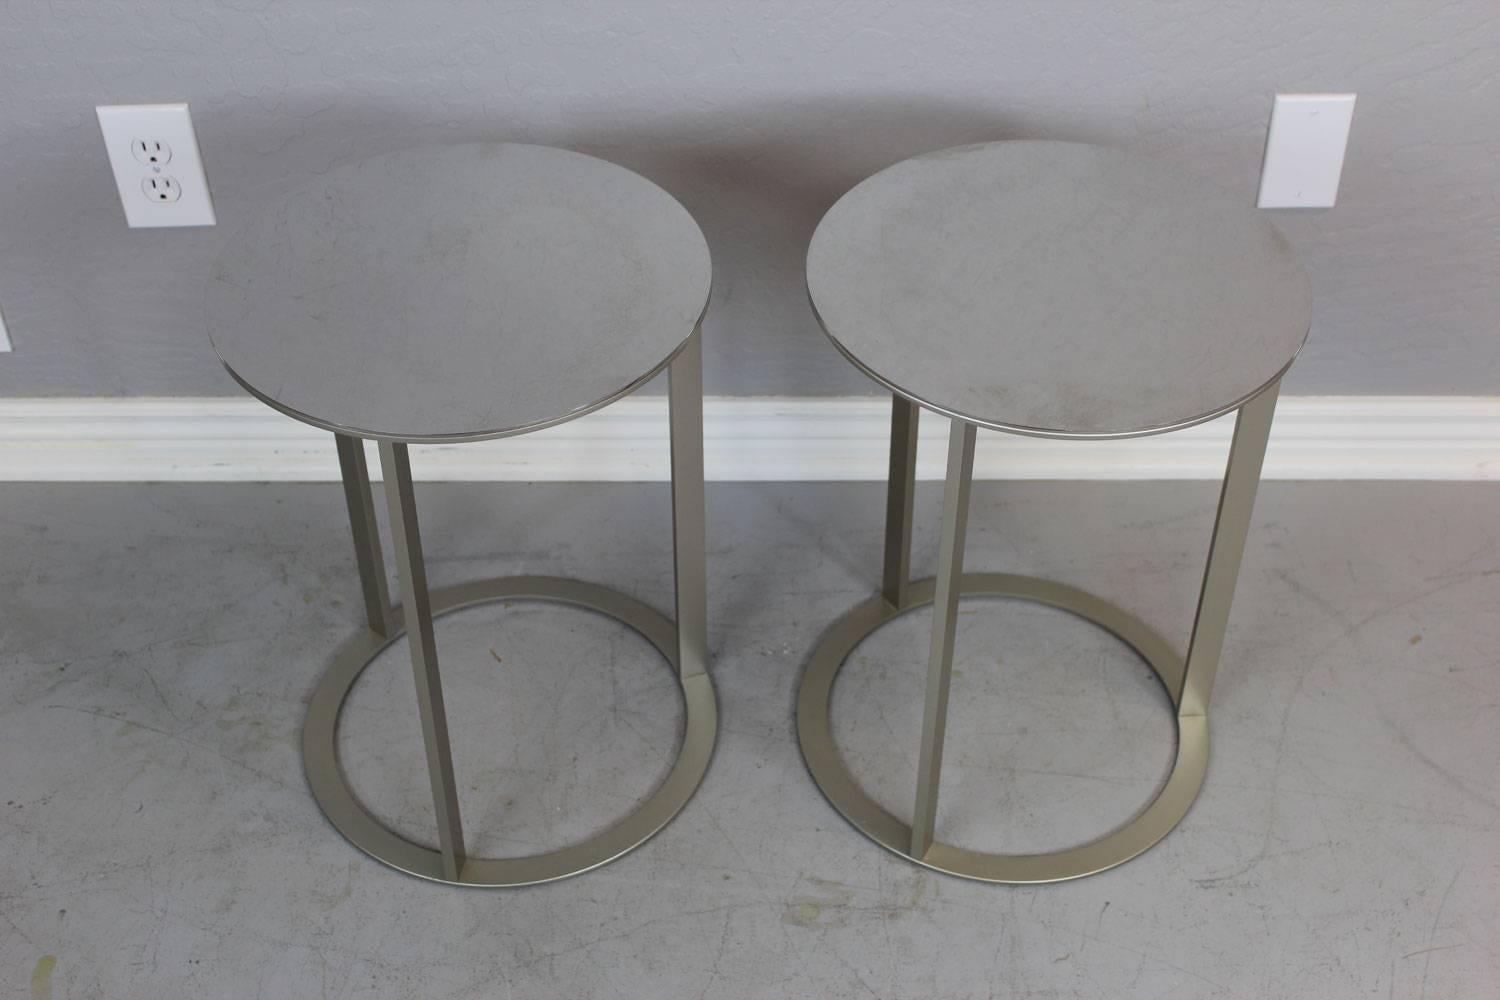 Sleek modern stainless steel table pair by Antonio Citterio.